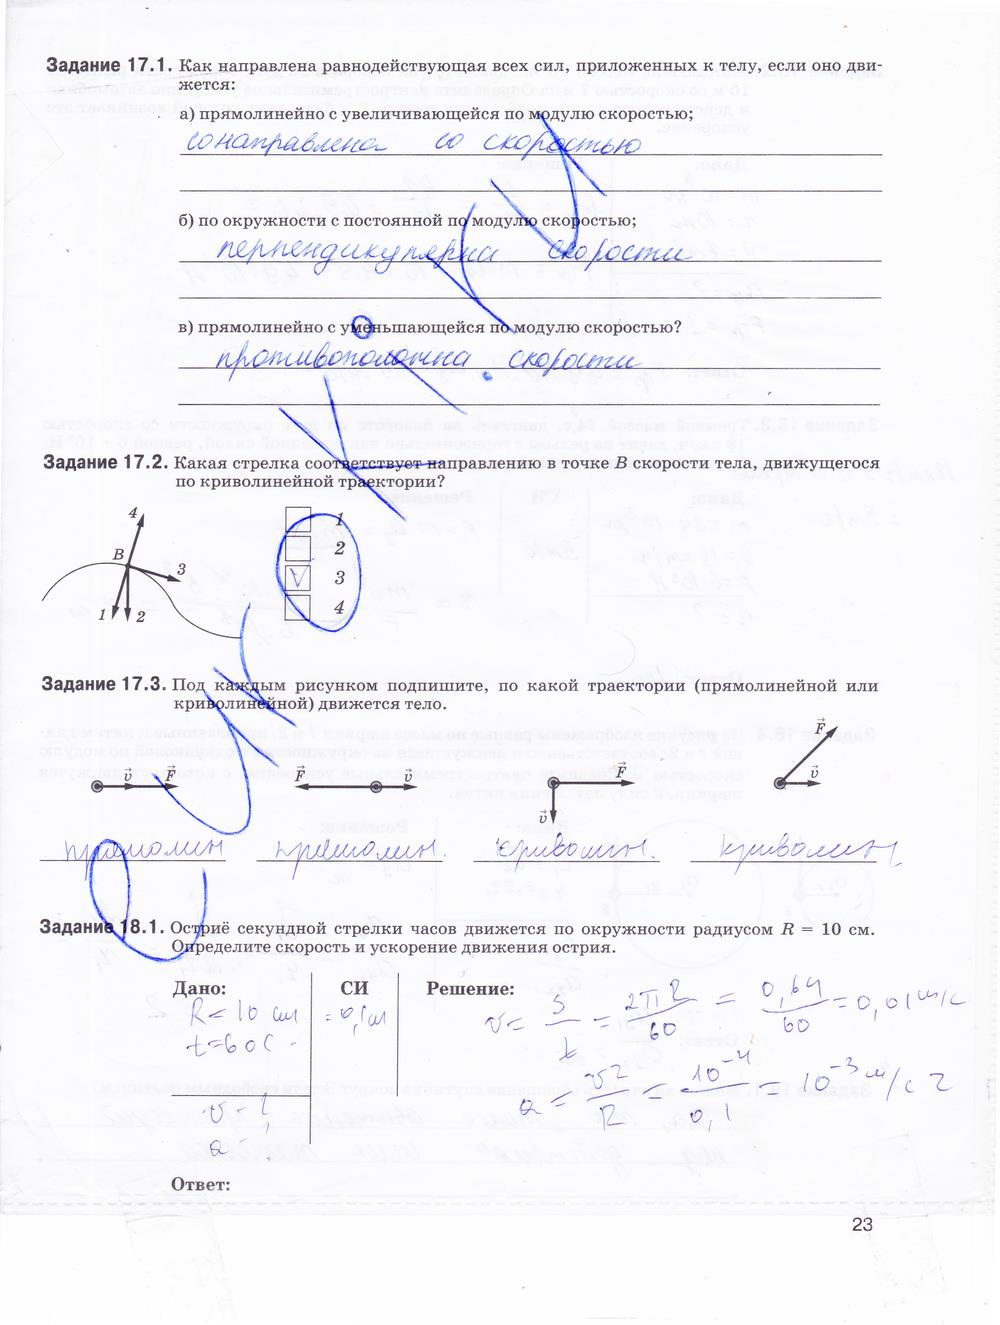 гдз 9 класс рабочая тетрадь страница 23 физика Гутник, Власова